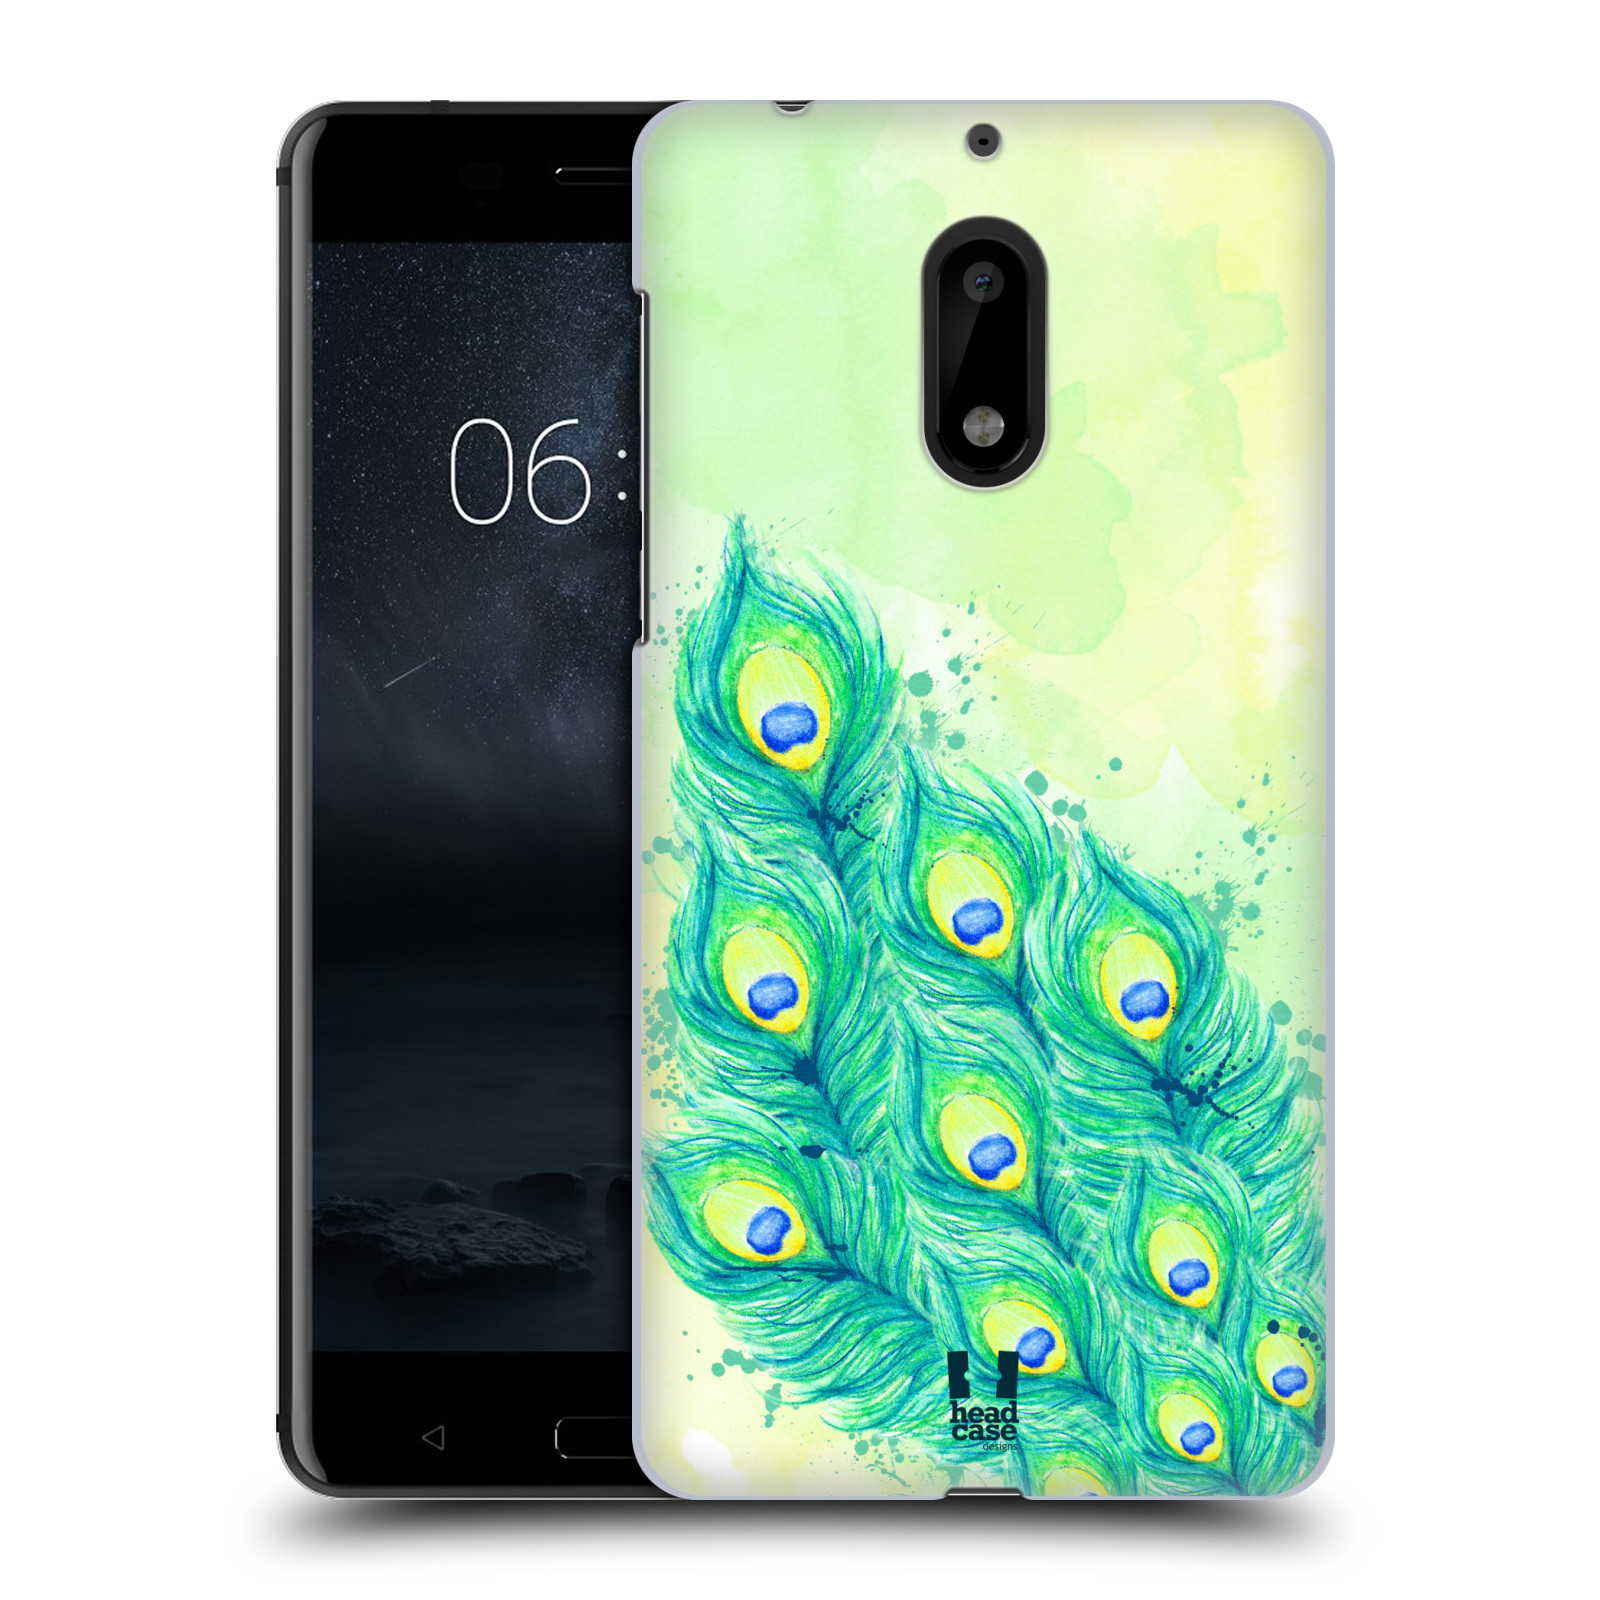 HEAD CASE plastový obal na mobil Nokia 6 vzor Paví pírka barevná MODRÁ A ZELENÁ